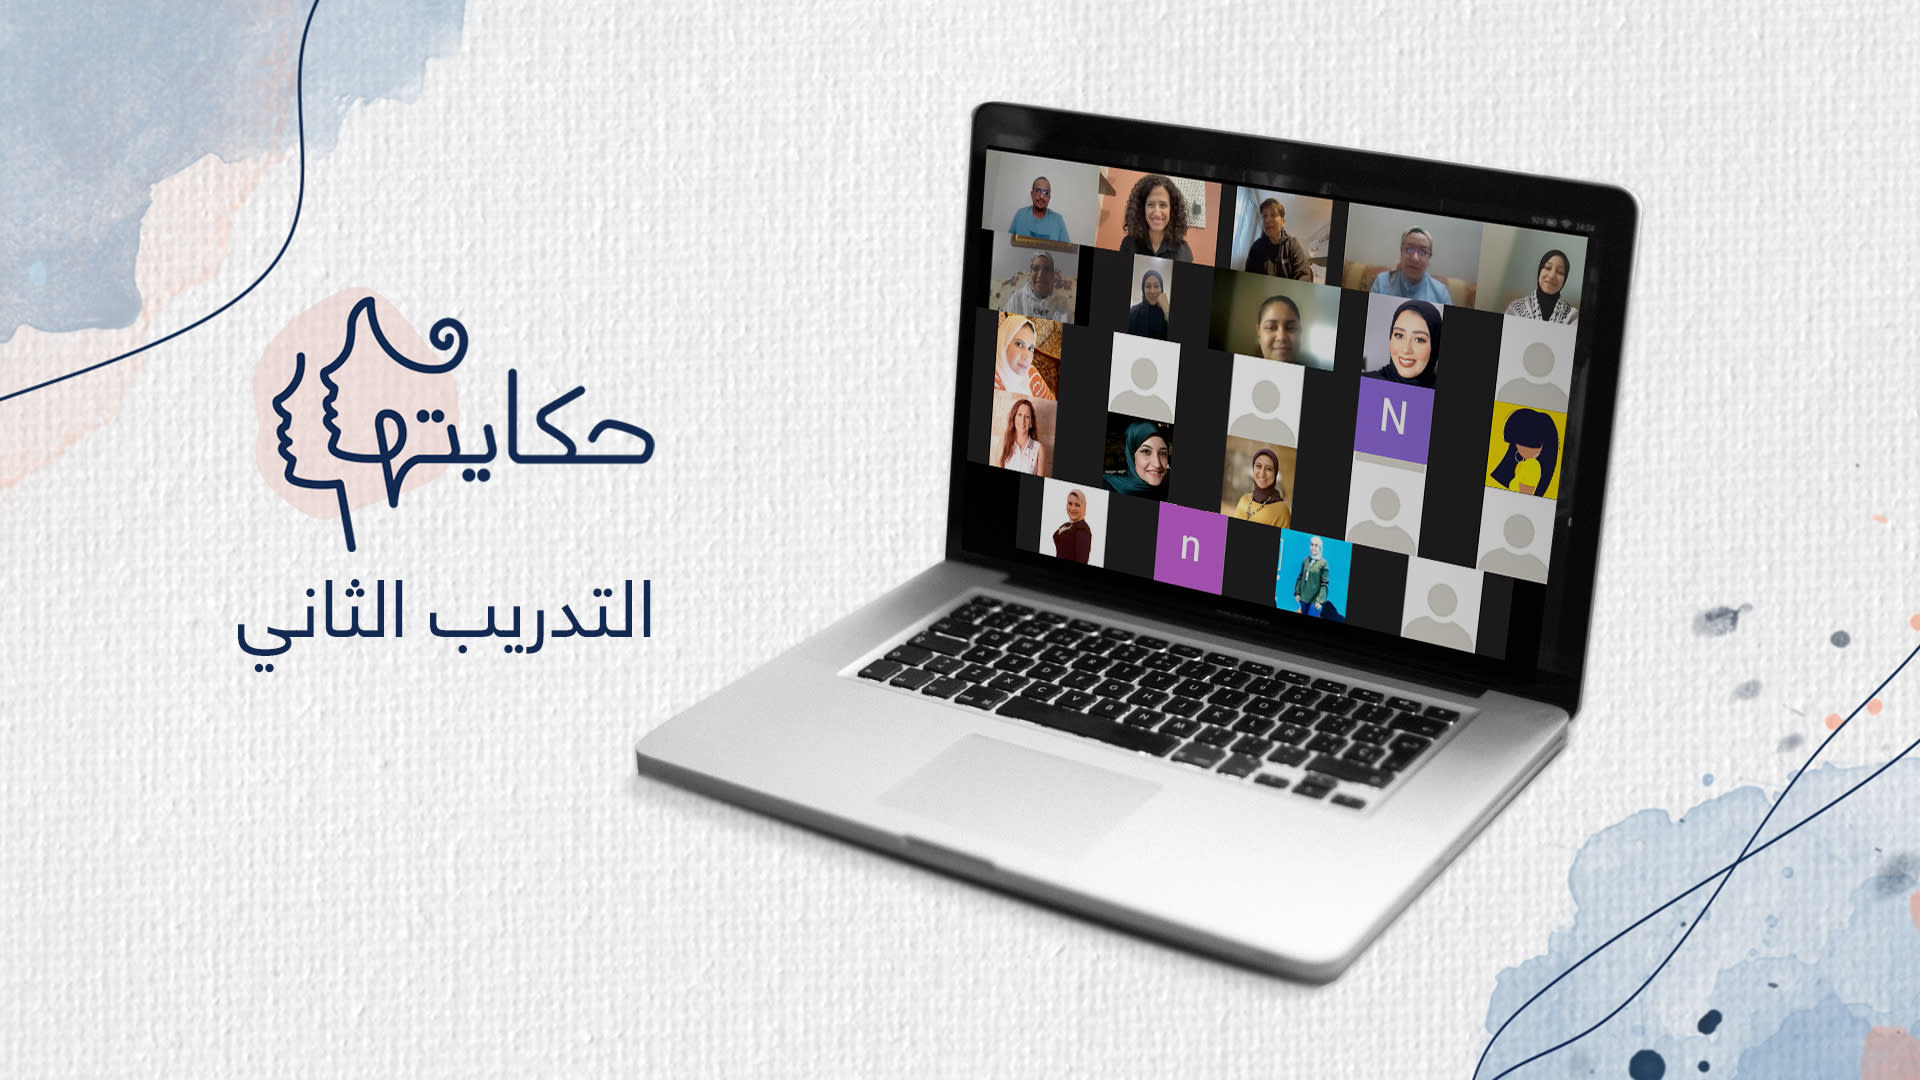 منصة "حكايتها" من CNN بالعربية تقدم ثاني تدريباتها للصحفيات وصانعات المحتوى حول صناعة البودكاست